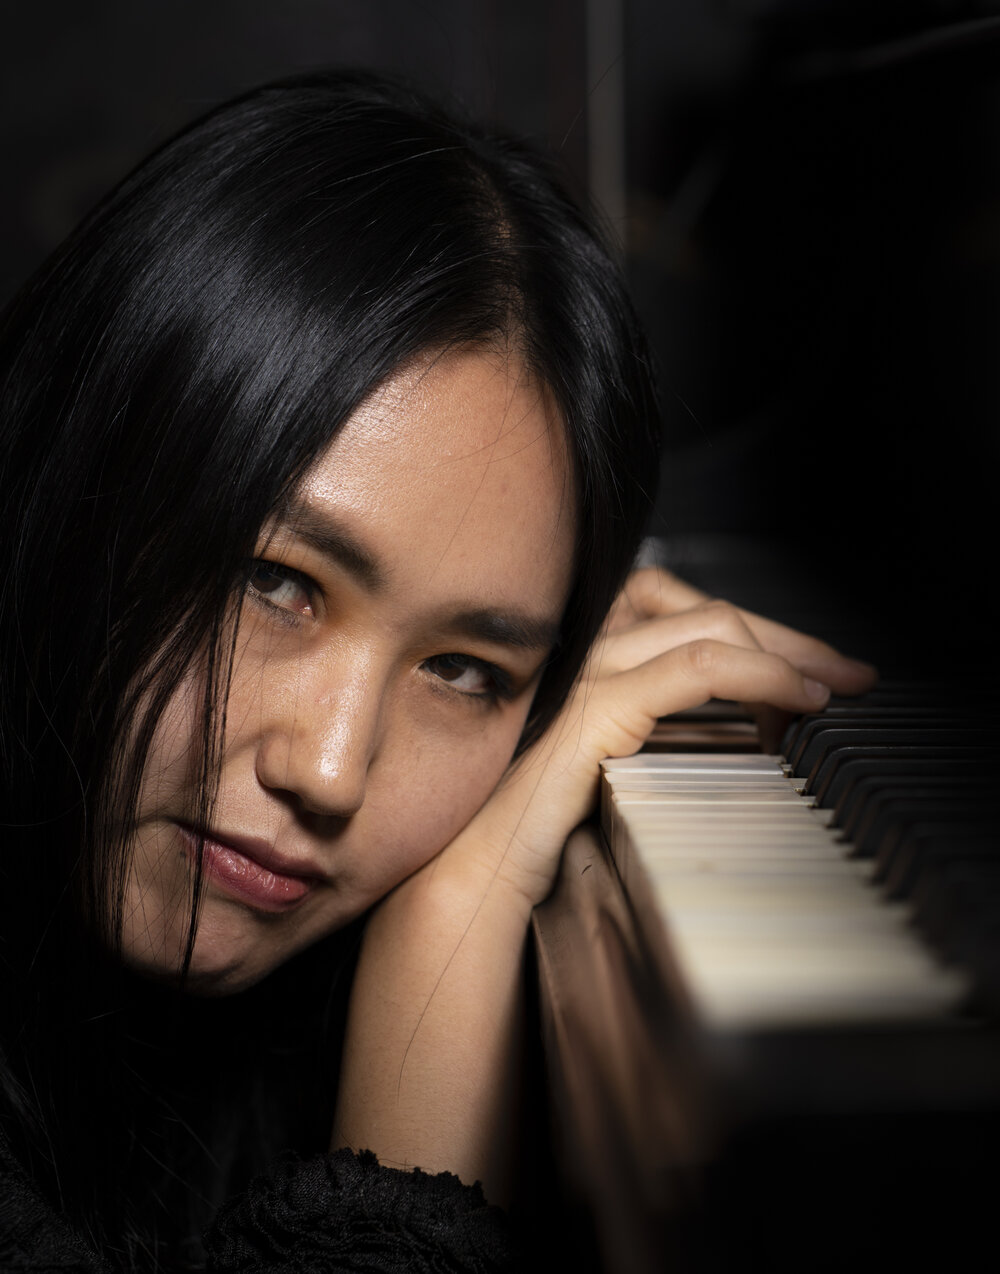 Martin Pizzarelli convida a pianista sul-coreana Hyuna Park para duas noites no Espaço 373